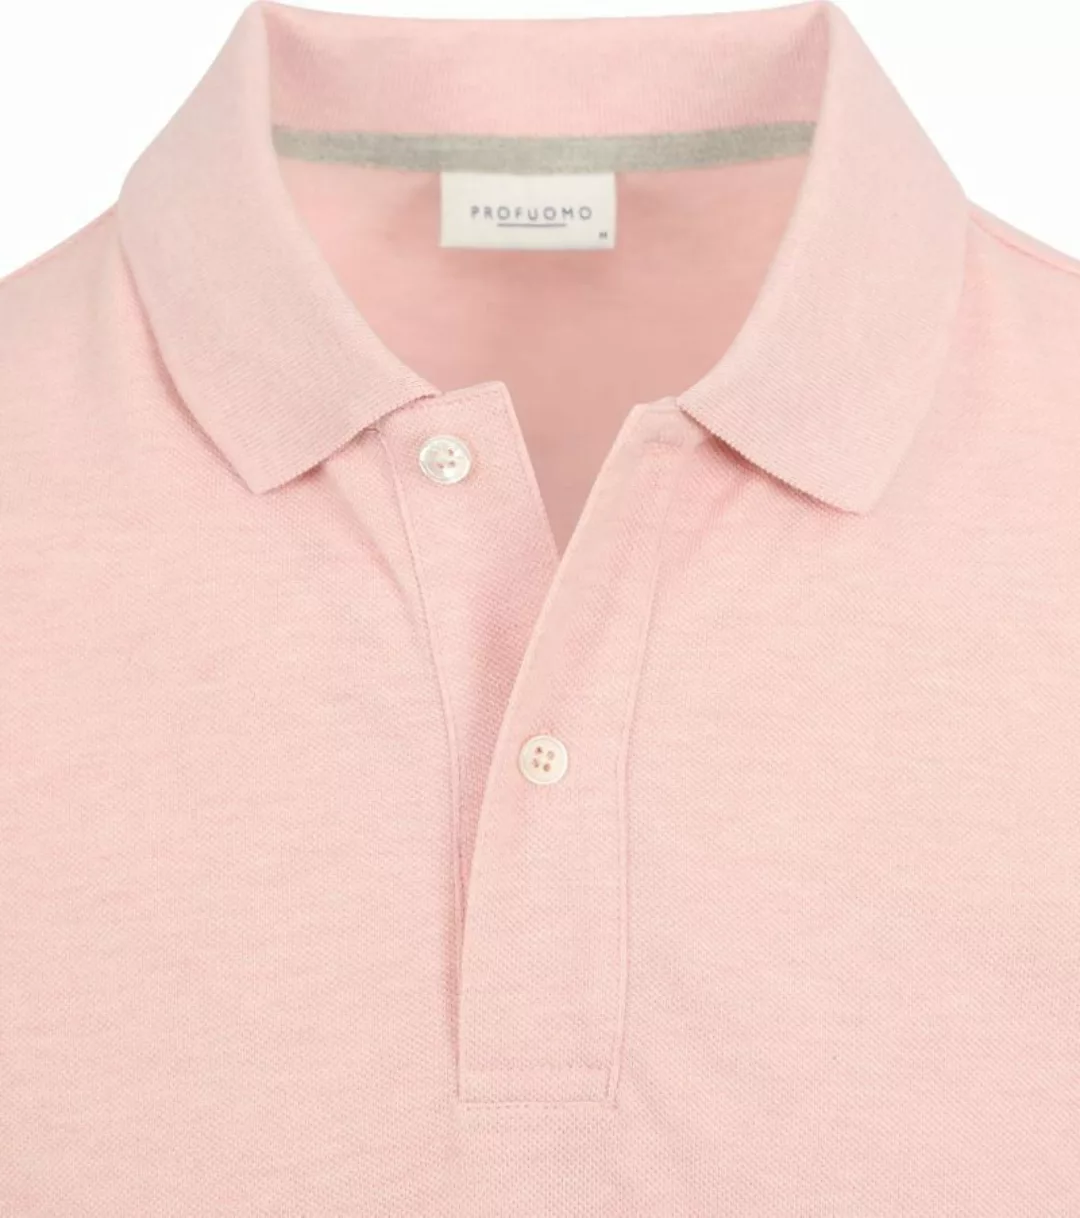 Profuomo Piqué Poloshirt Rosa - Größe XXL günstig online kaufen